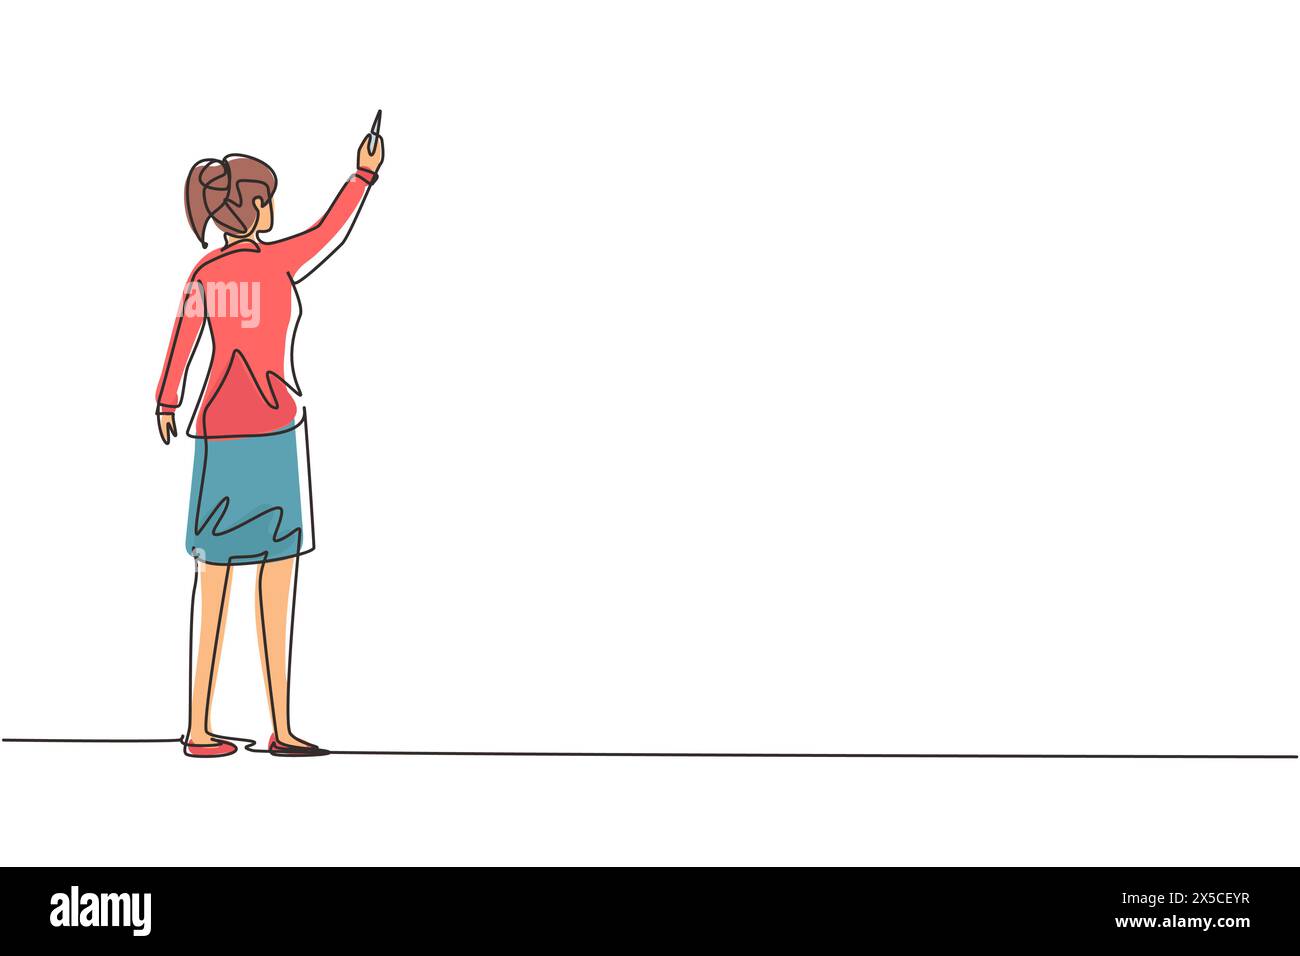 Linea singola continua che disegna la vista posteriore di una donna insegnante o studentessa che scrive formule sulla lavagna della classe tenendo il gesso nella mano destra. Università o. Illustrazione Vettoriale